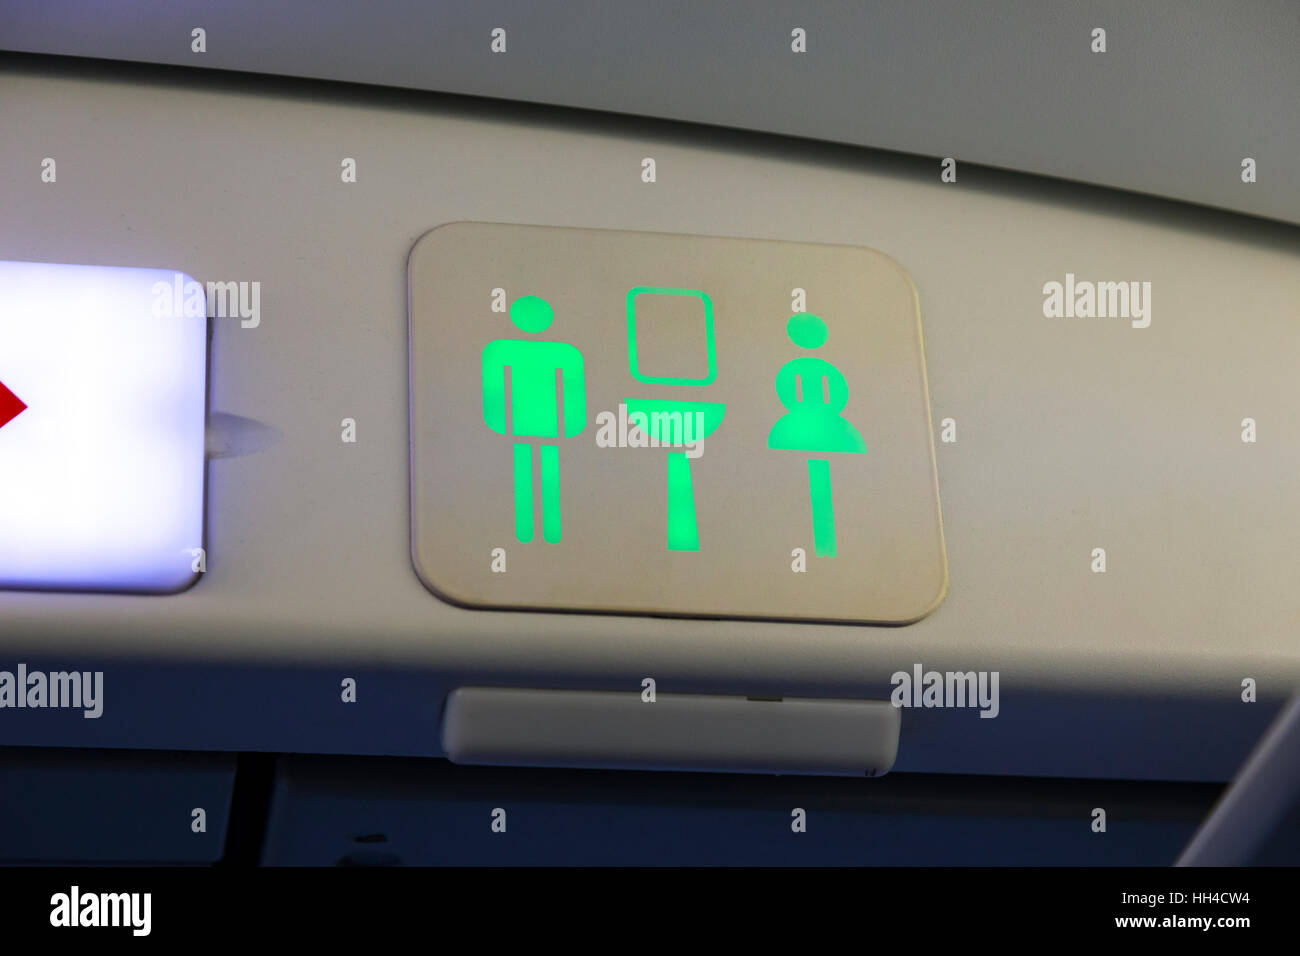 Toilettes toilettes signe / douche / wc / WC / dames / hommes / logo signes sur un Airbus A320 d'air avion avion avion avion Banque D'Images